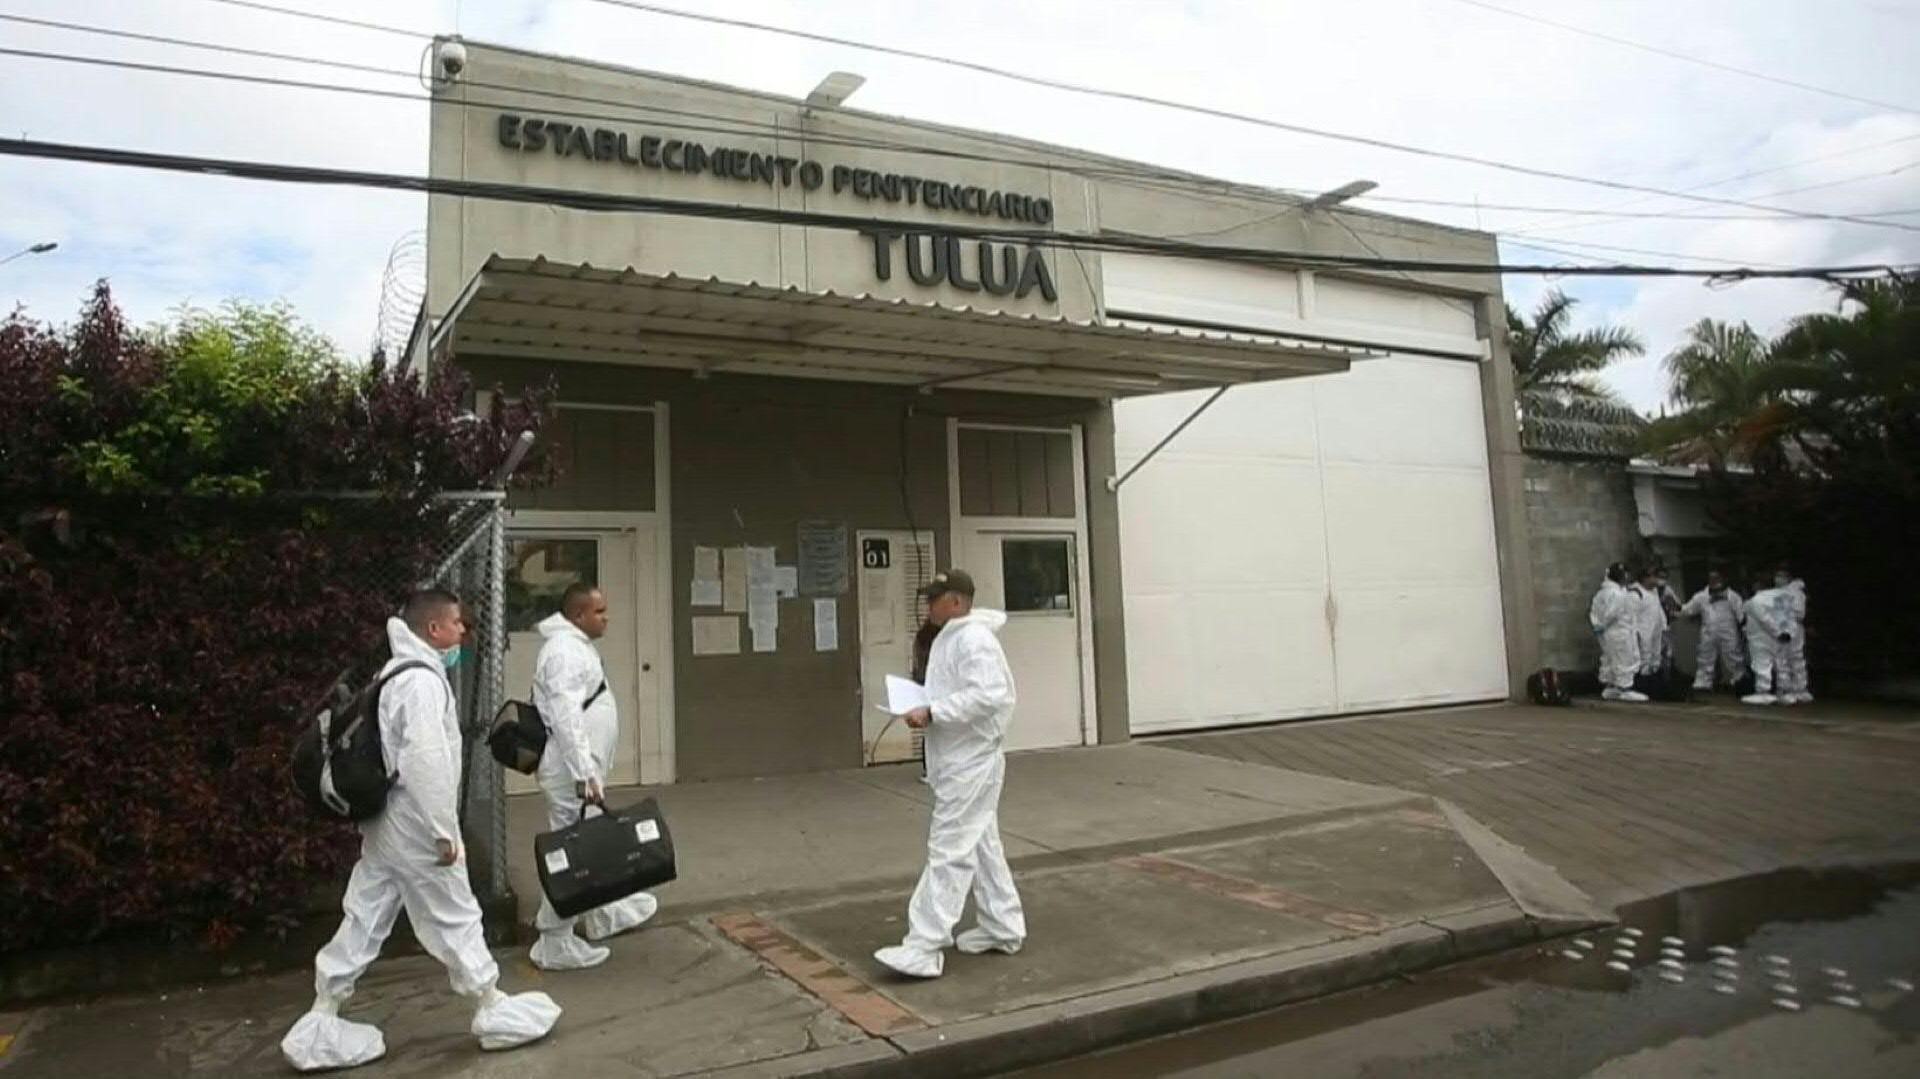 Tragedia en la cárcel de Tuluá: 13 cuerpos de internos muertos en el incendio no han sido reclamados por nadie